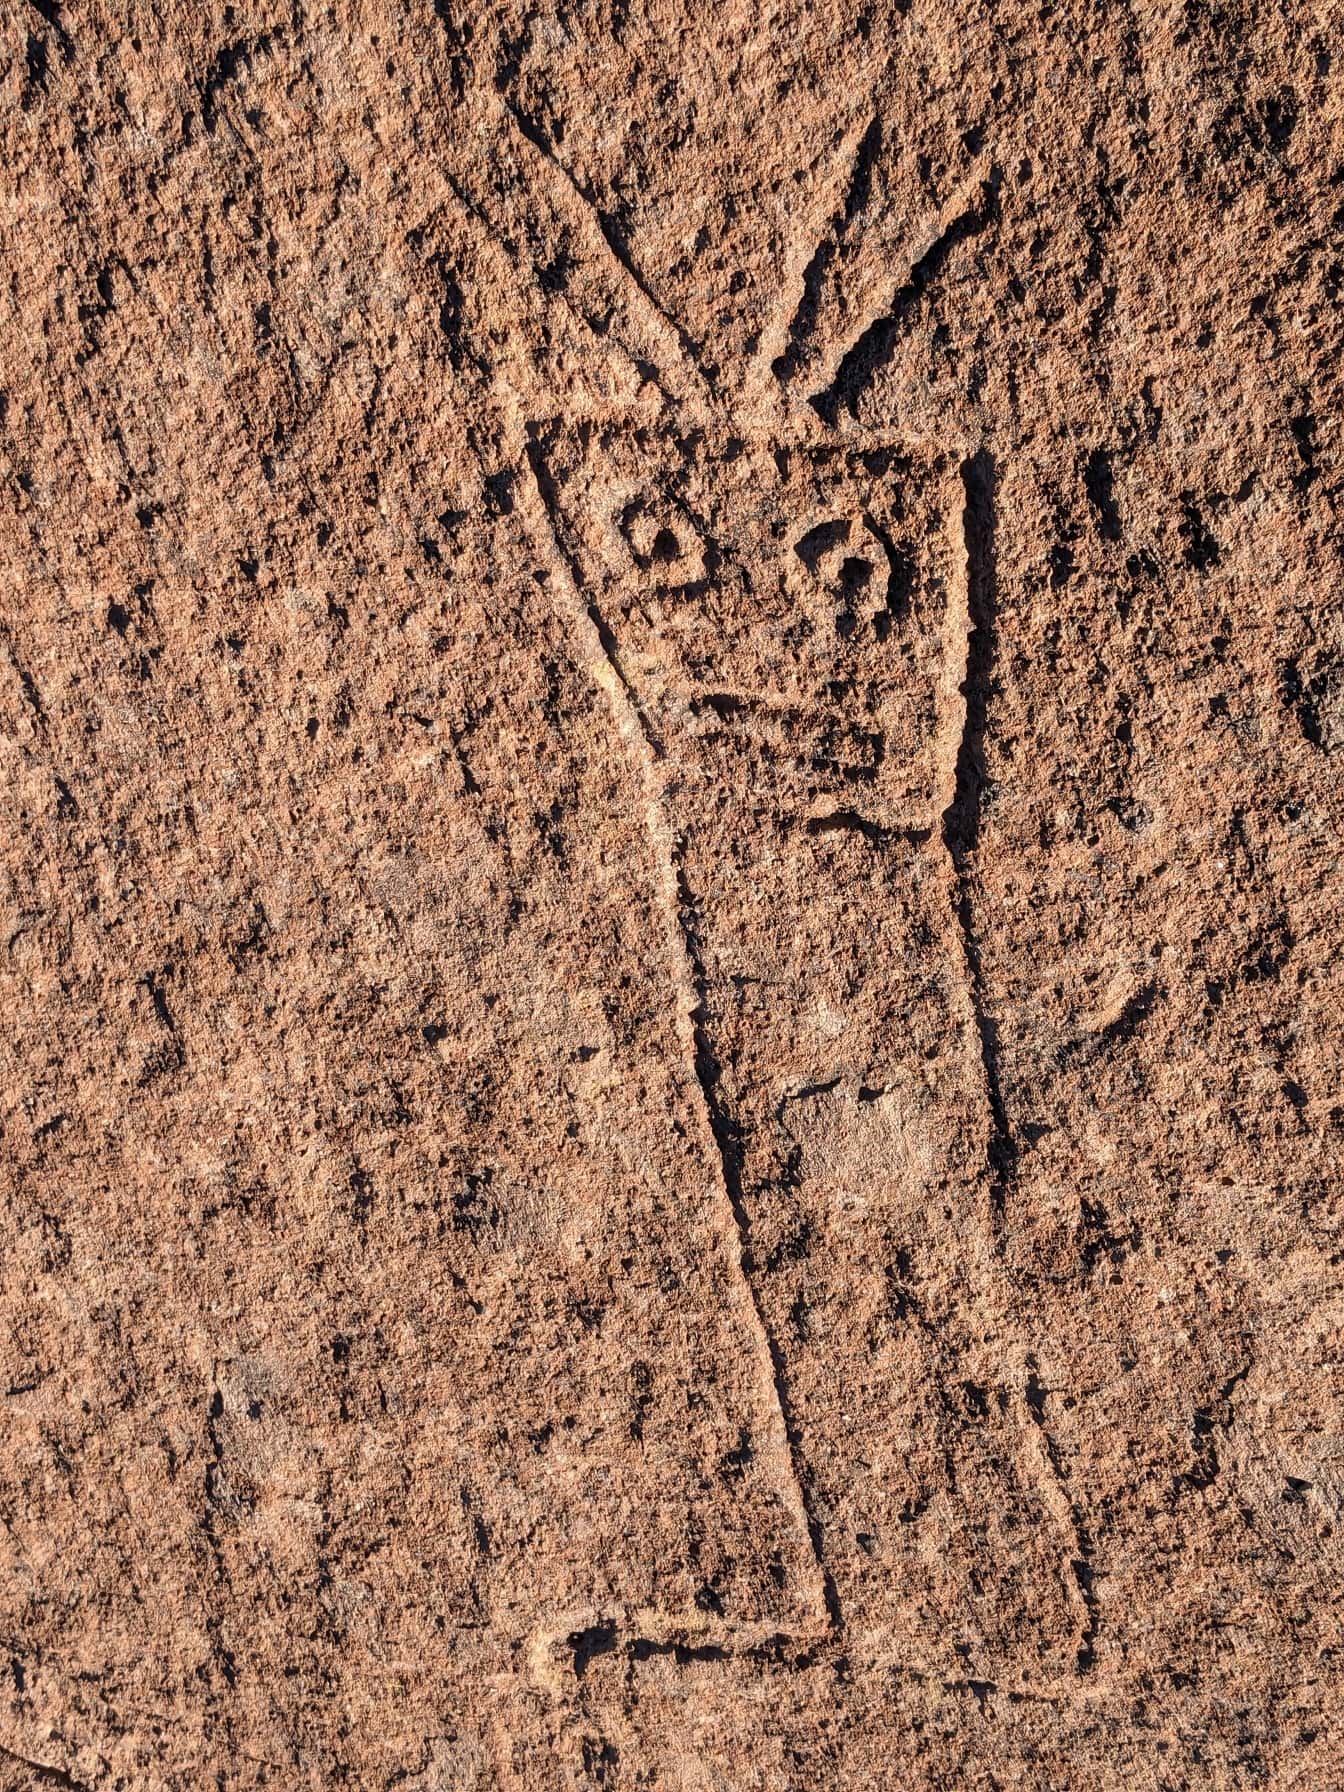 Starożytne naiwne kamienne rzeźby, petroglify w Ameryce Południowej mogą pochodzić z okresu neolitu